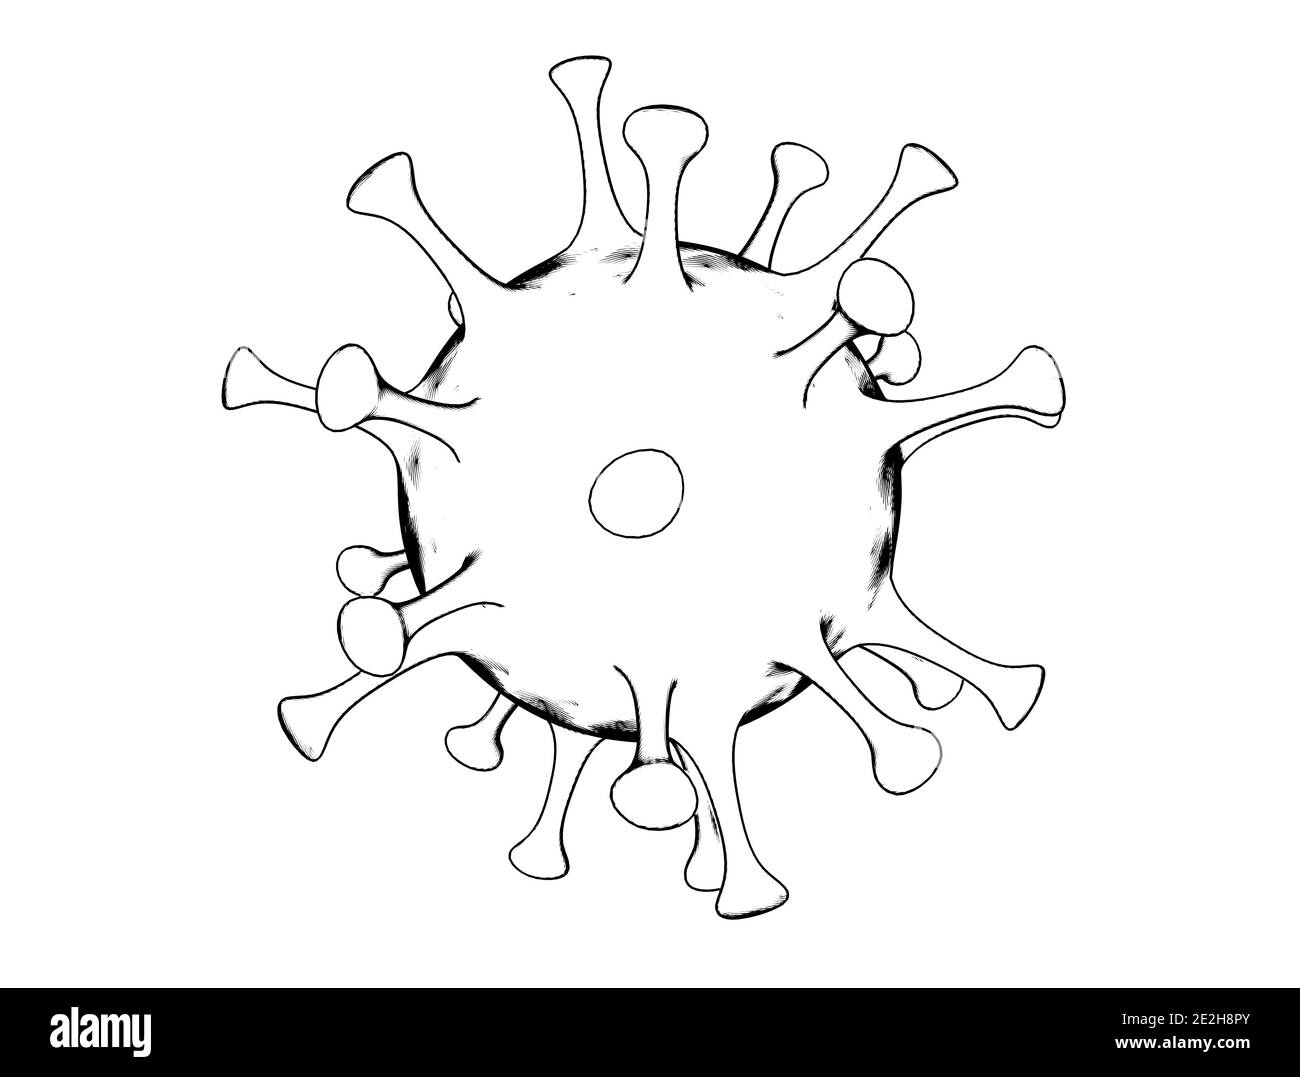 Disegno di cellule del virus isolato su sfondo bianco. Immagine 3D di Coronavirus Covid-19 Foto Stock